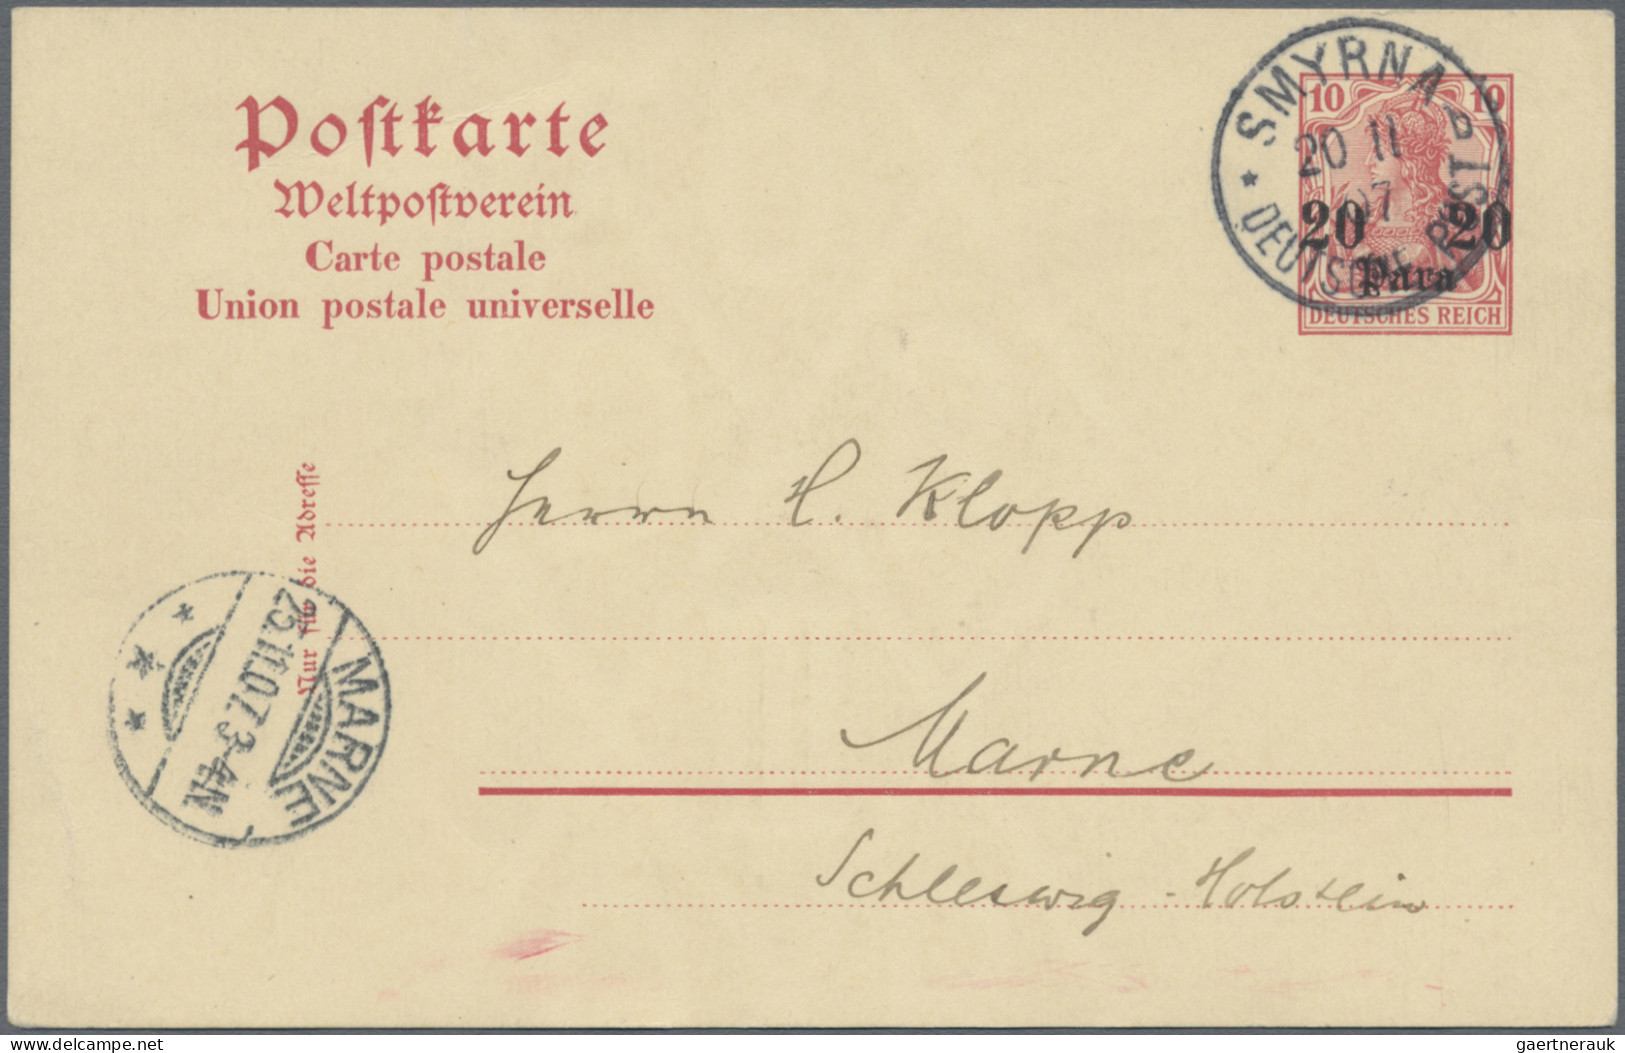 Deutsche Post in der Türkei - Ganzsachen: 1897/1914, saubere Partie von 17 gebra